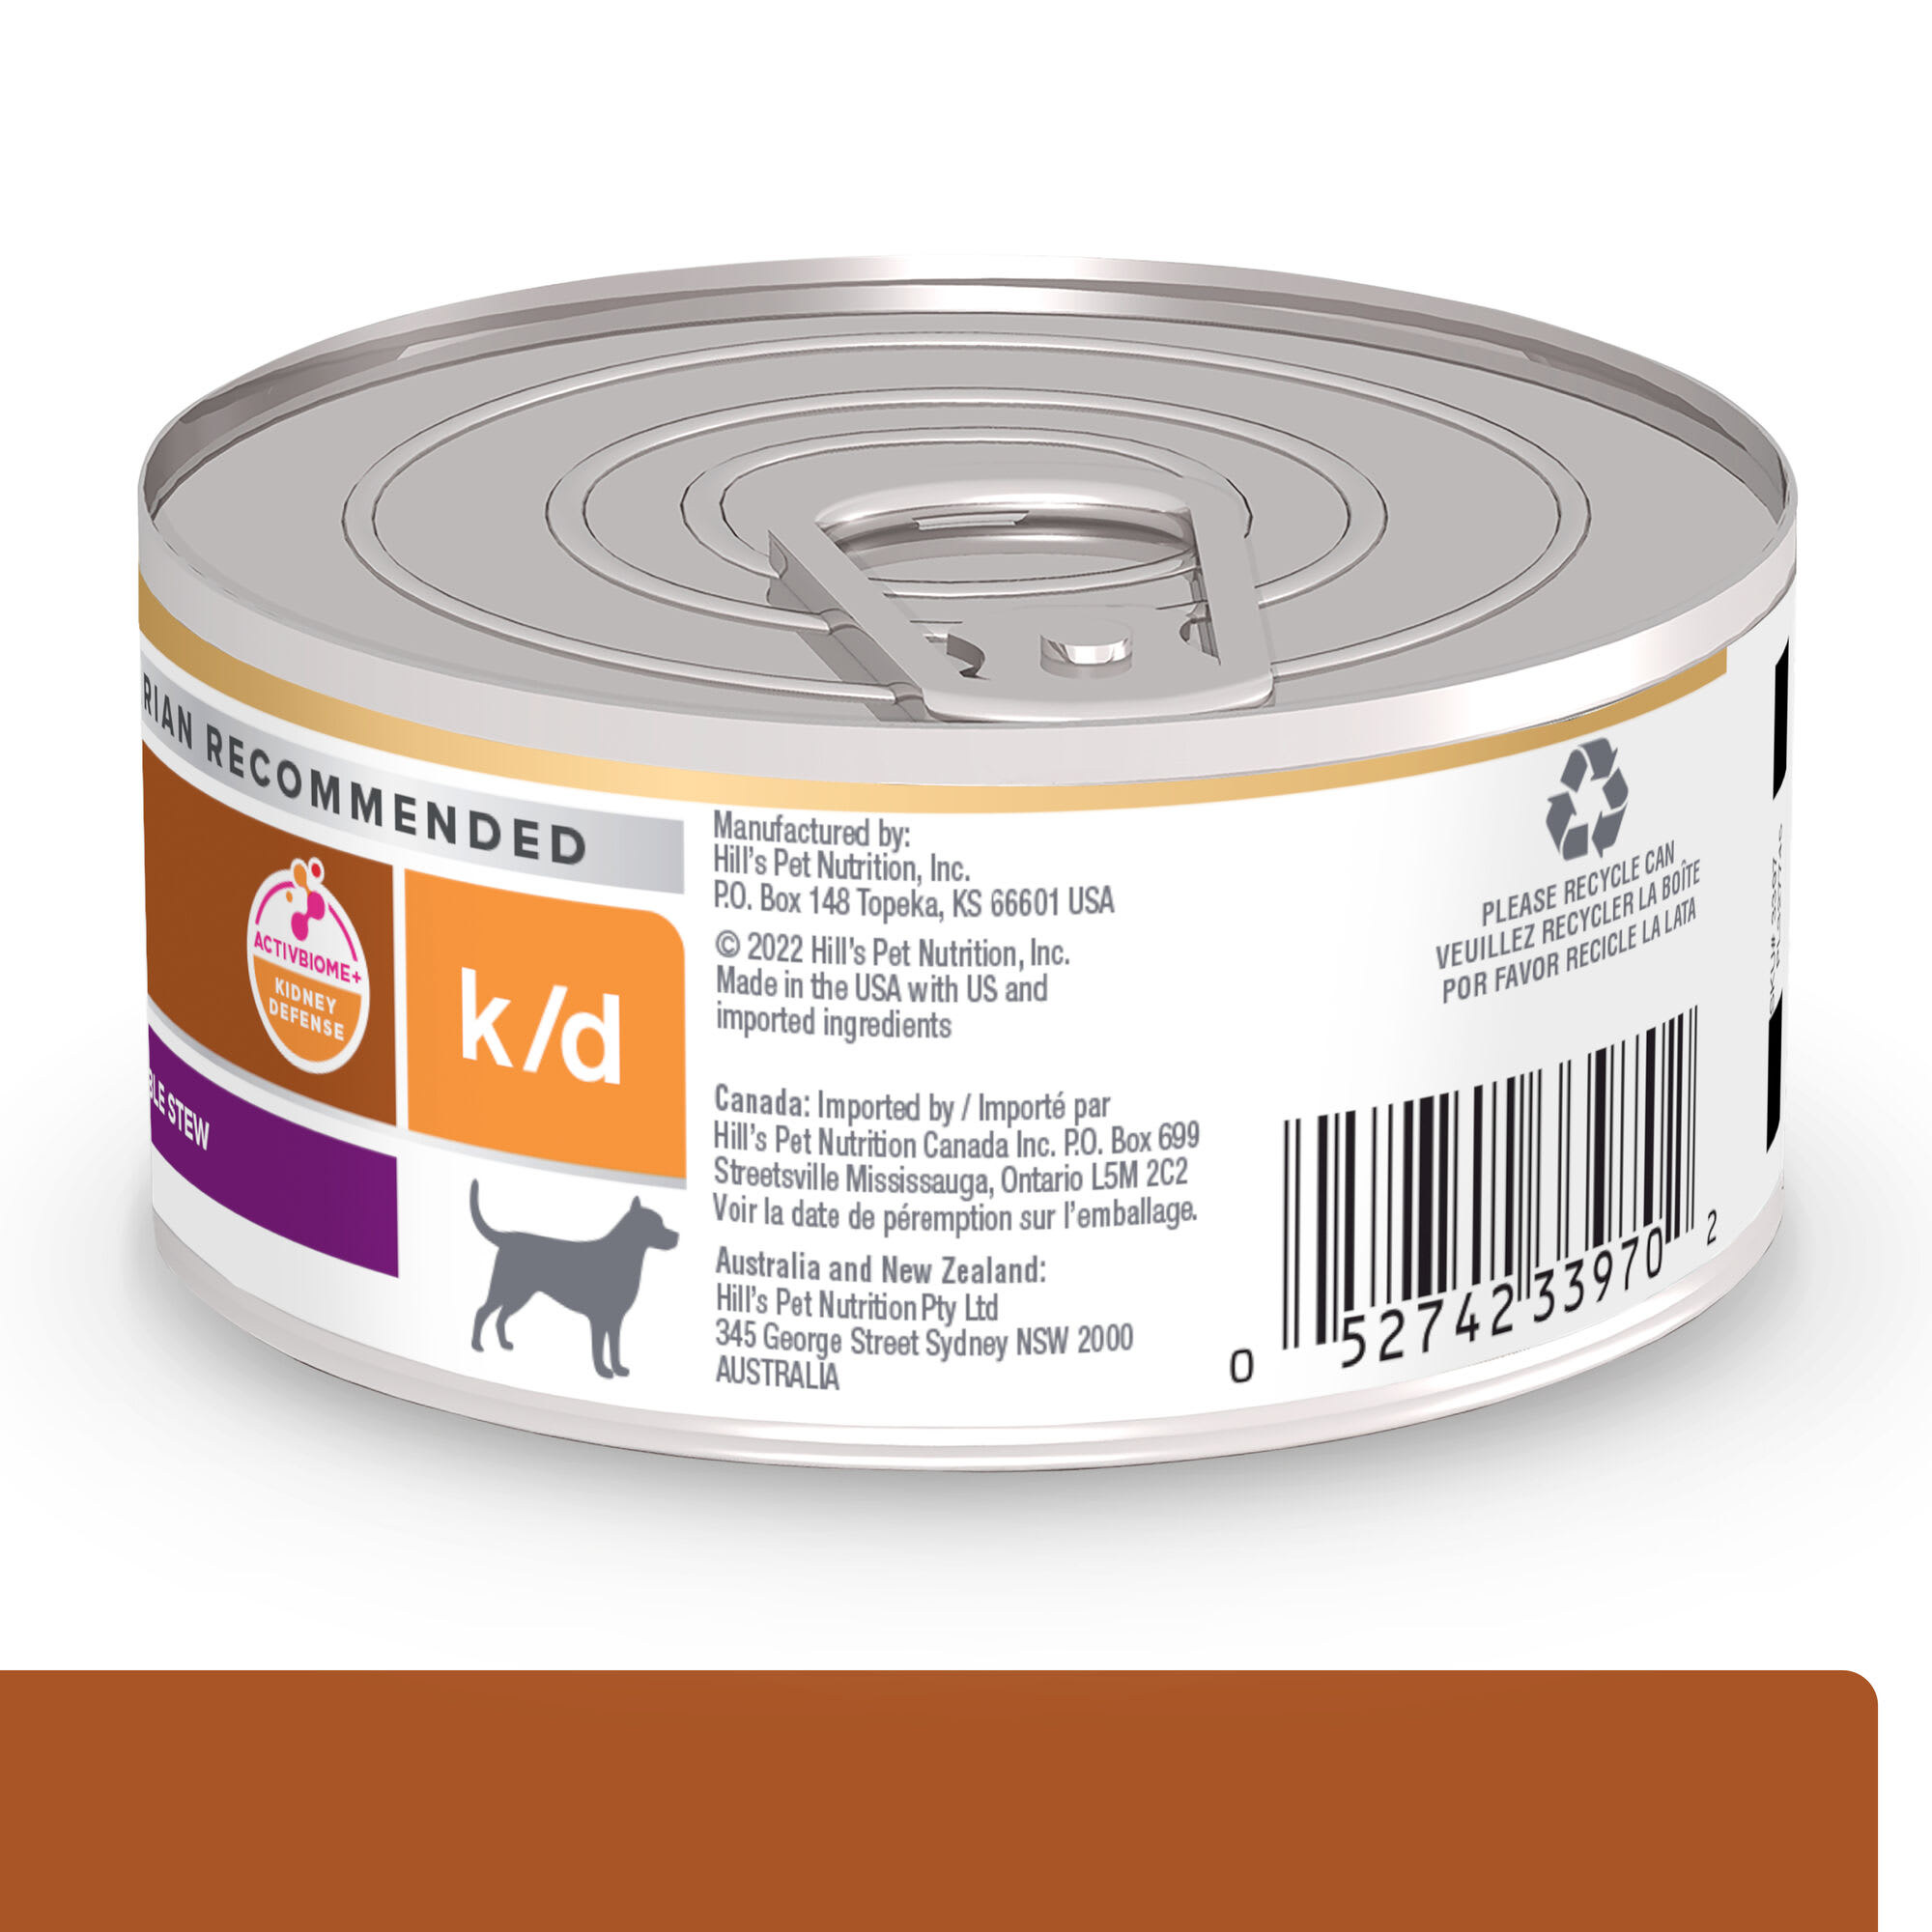 Okkernoot Leugen overhemd Hill's Prescription Diet k/d Kidney Care Beef & Vegetable Stew Canned Dog  Food, 12.5 oz., Case of 12 | Petco